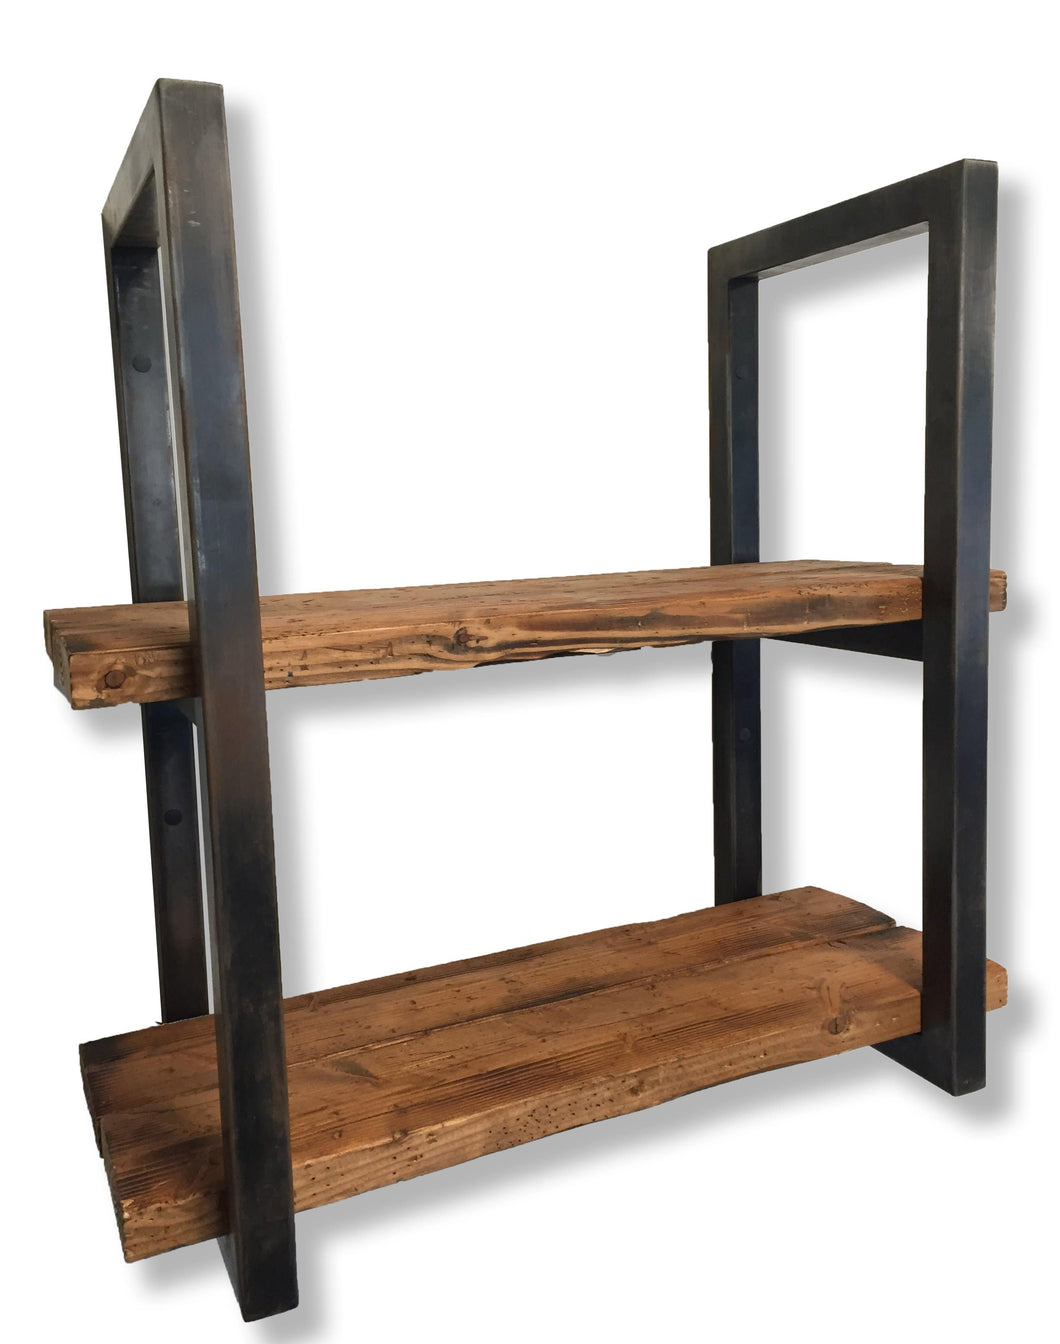 Reclamed Wood Shelves 3cropped 7336a79f 1103 4ebf 98be 70c200daadfe 530x@2x ?v=1507590508